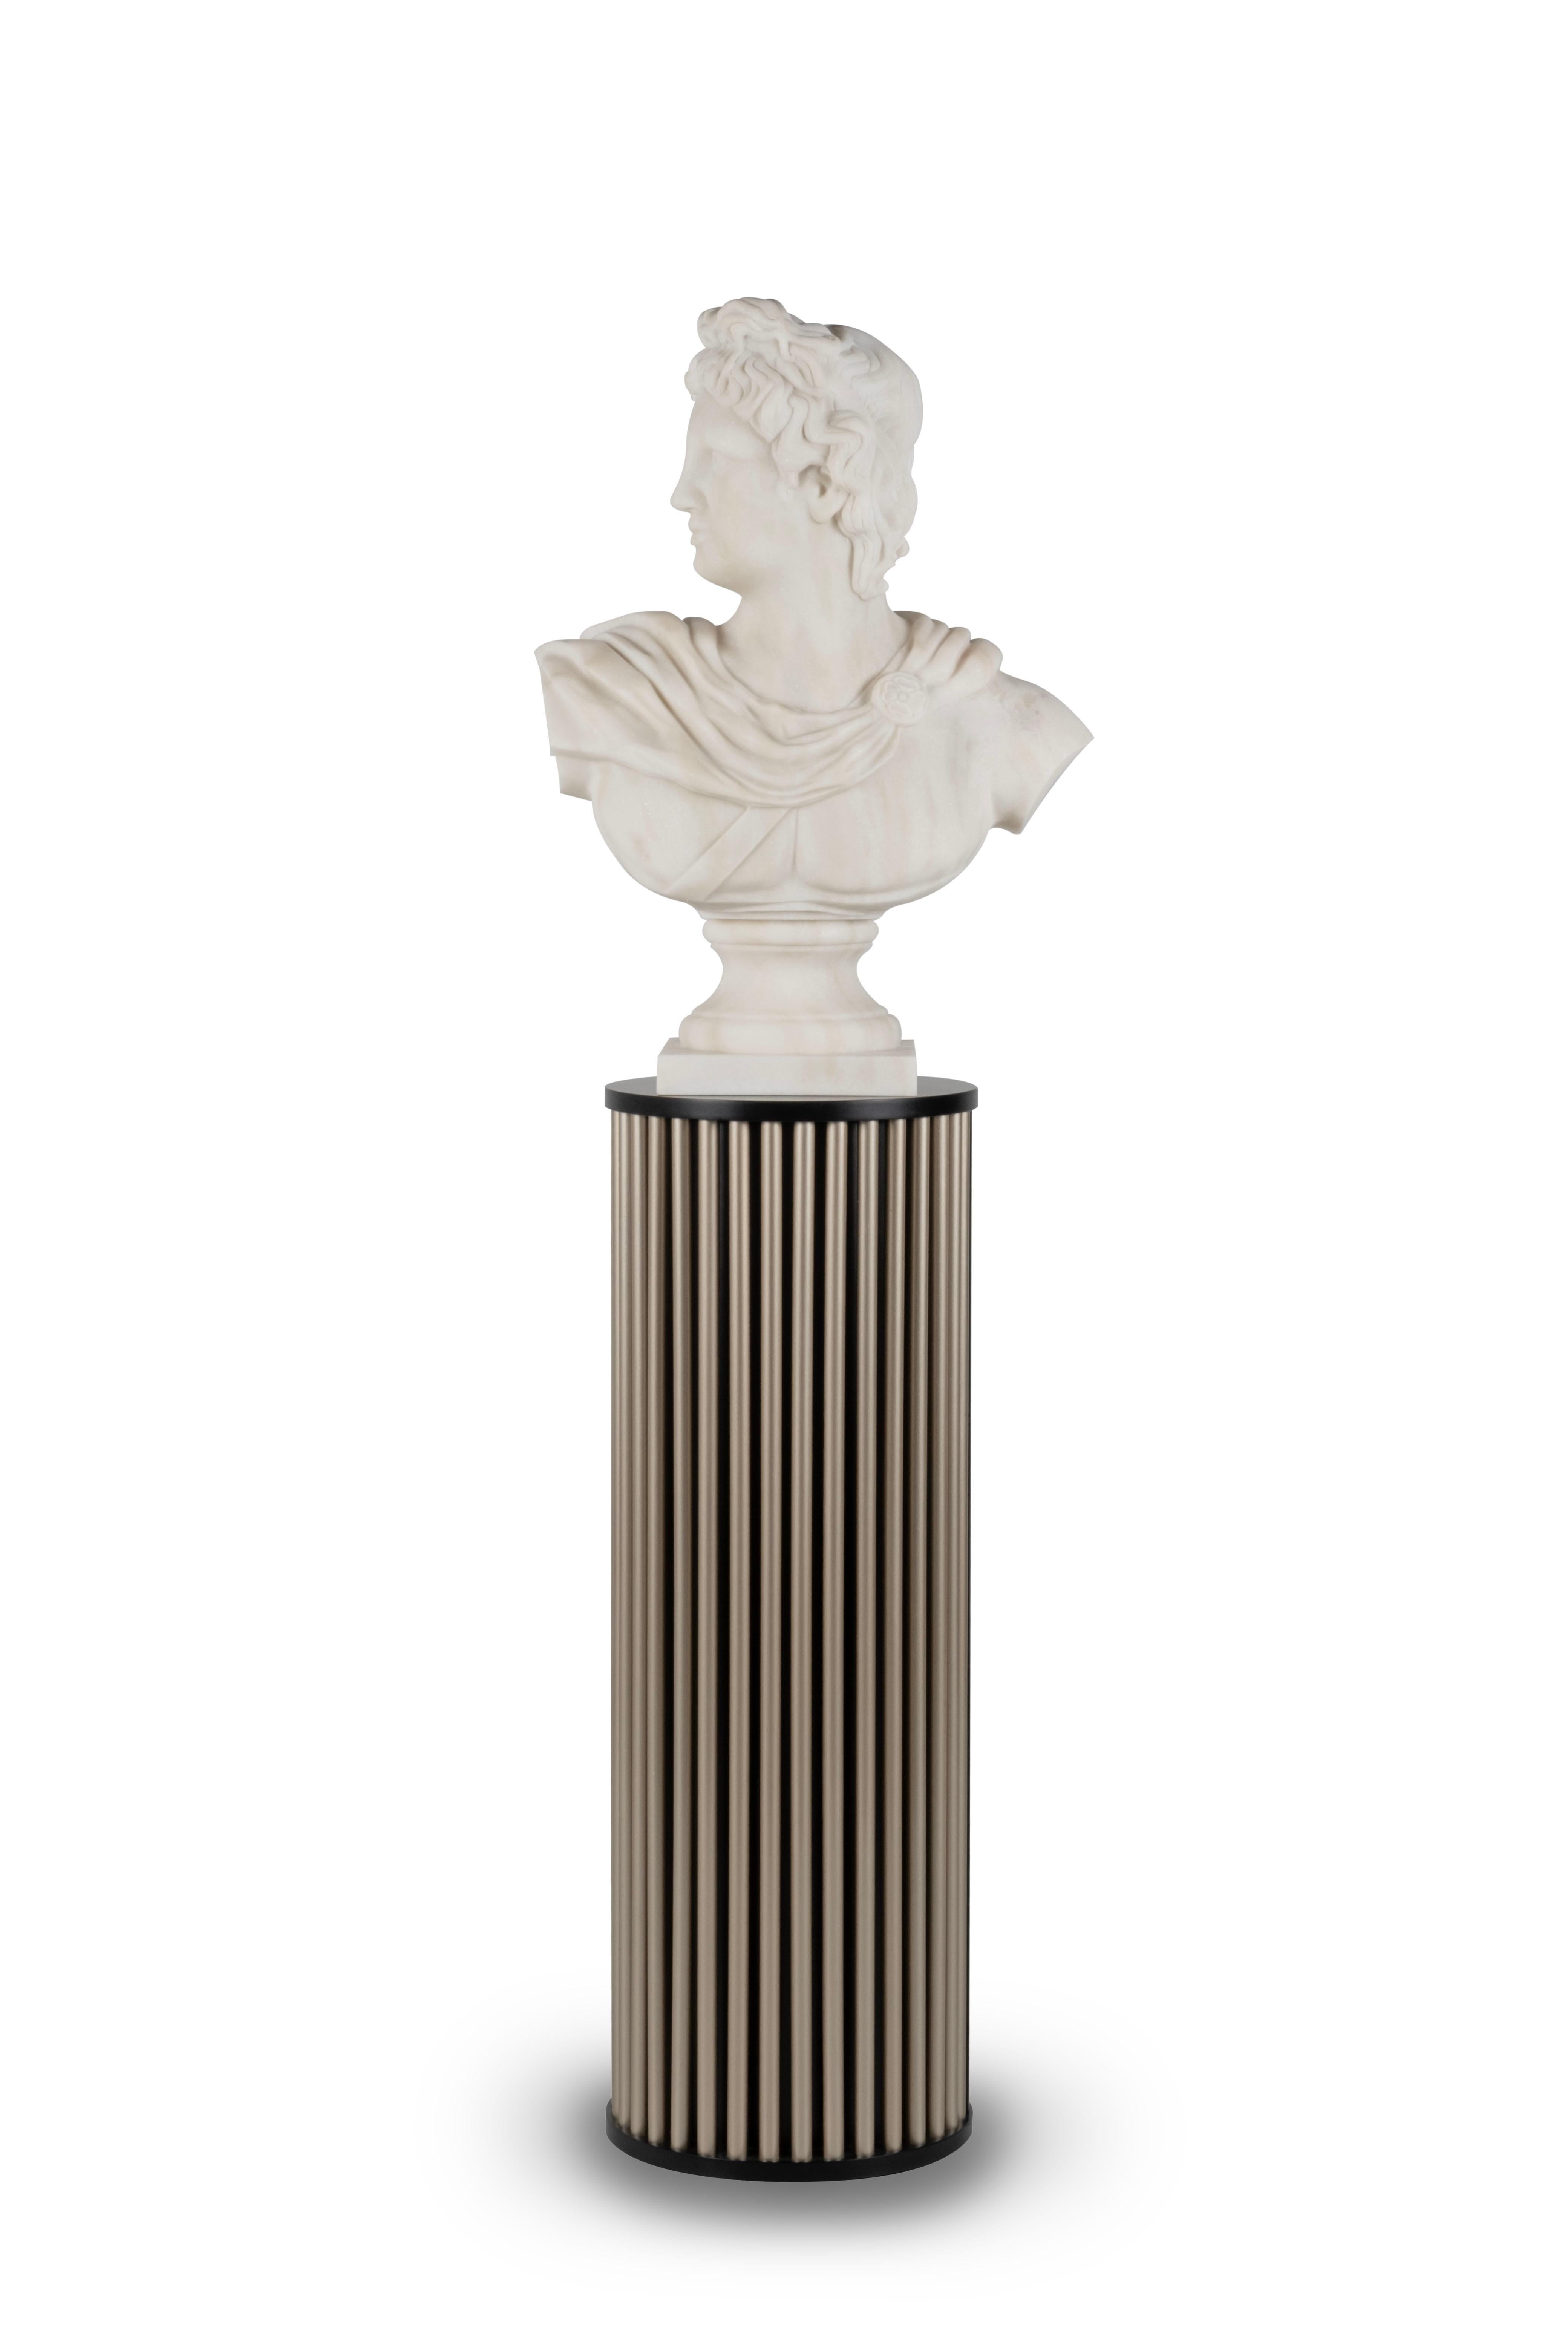 Buste Apolo, Marbre Calacatta Bianco, Collection Moderne, Fabriqué à la main au Portugal - Europe par GF Modern.

Le buste Apolo est une pièce sculpturale captivante, méticuleusement réalisée en marbre Calacatta Bianco. En tant que l'une des